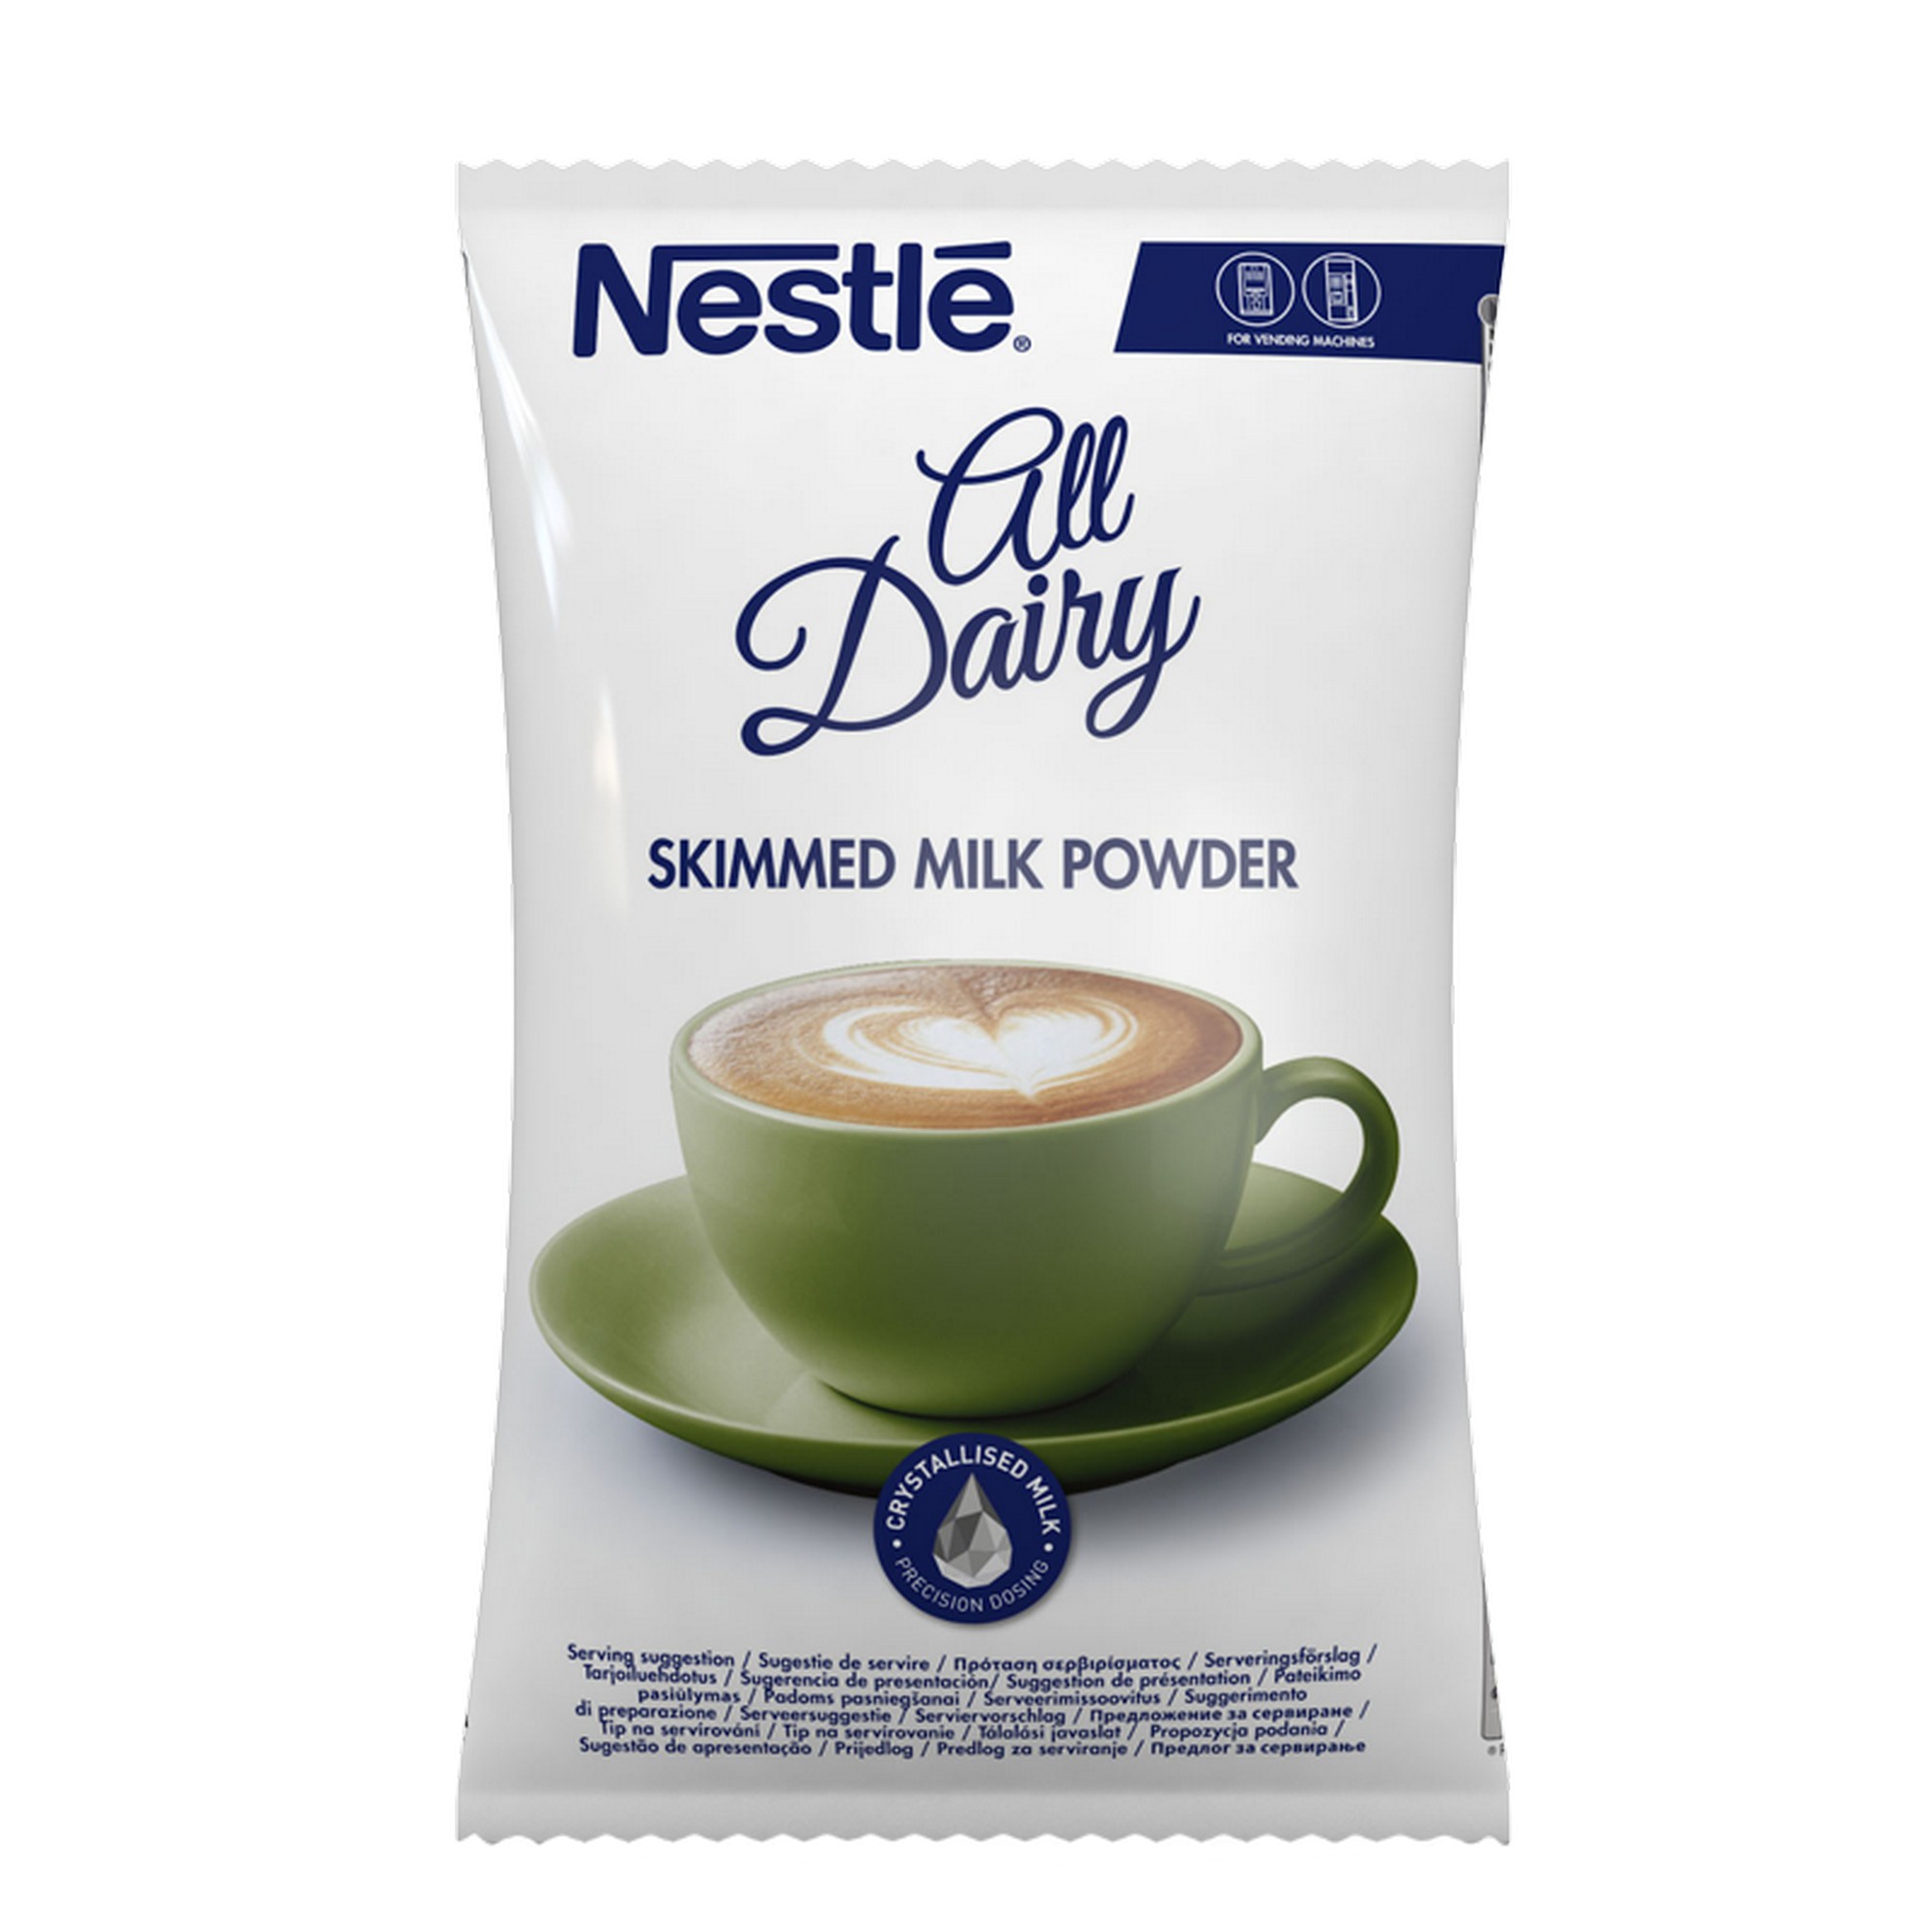 All dairy skimmed milk powder   500g